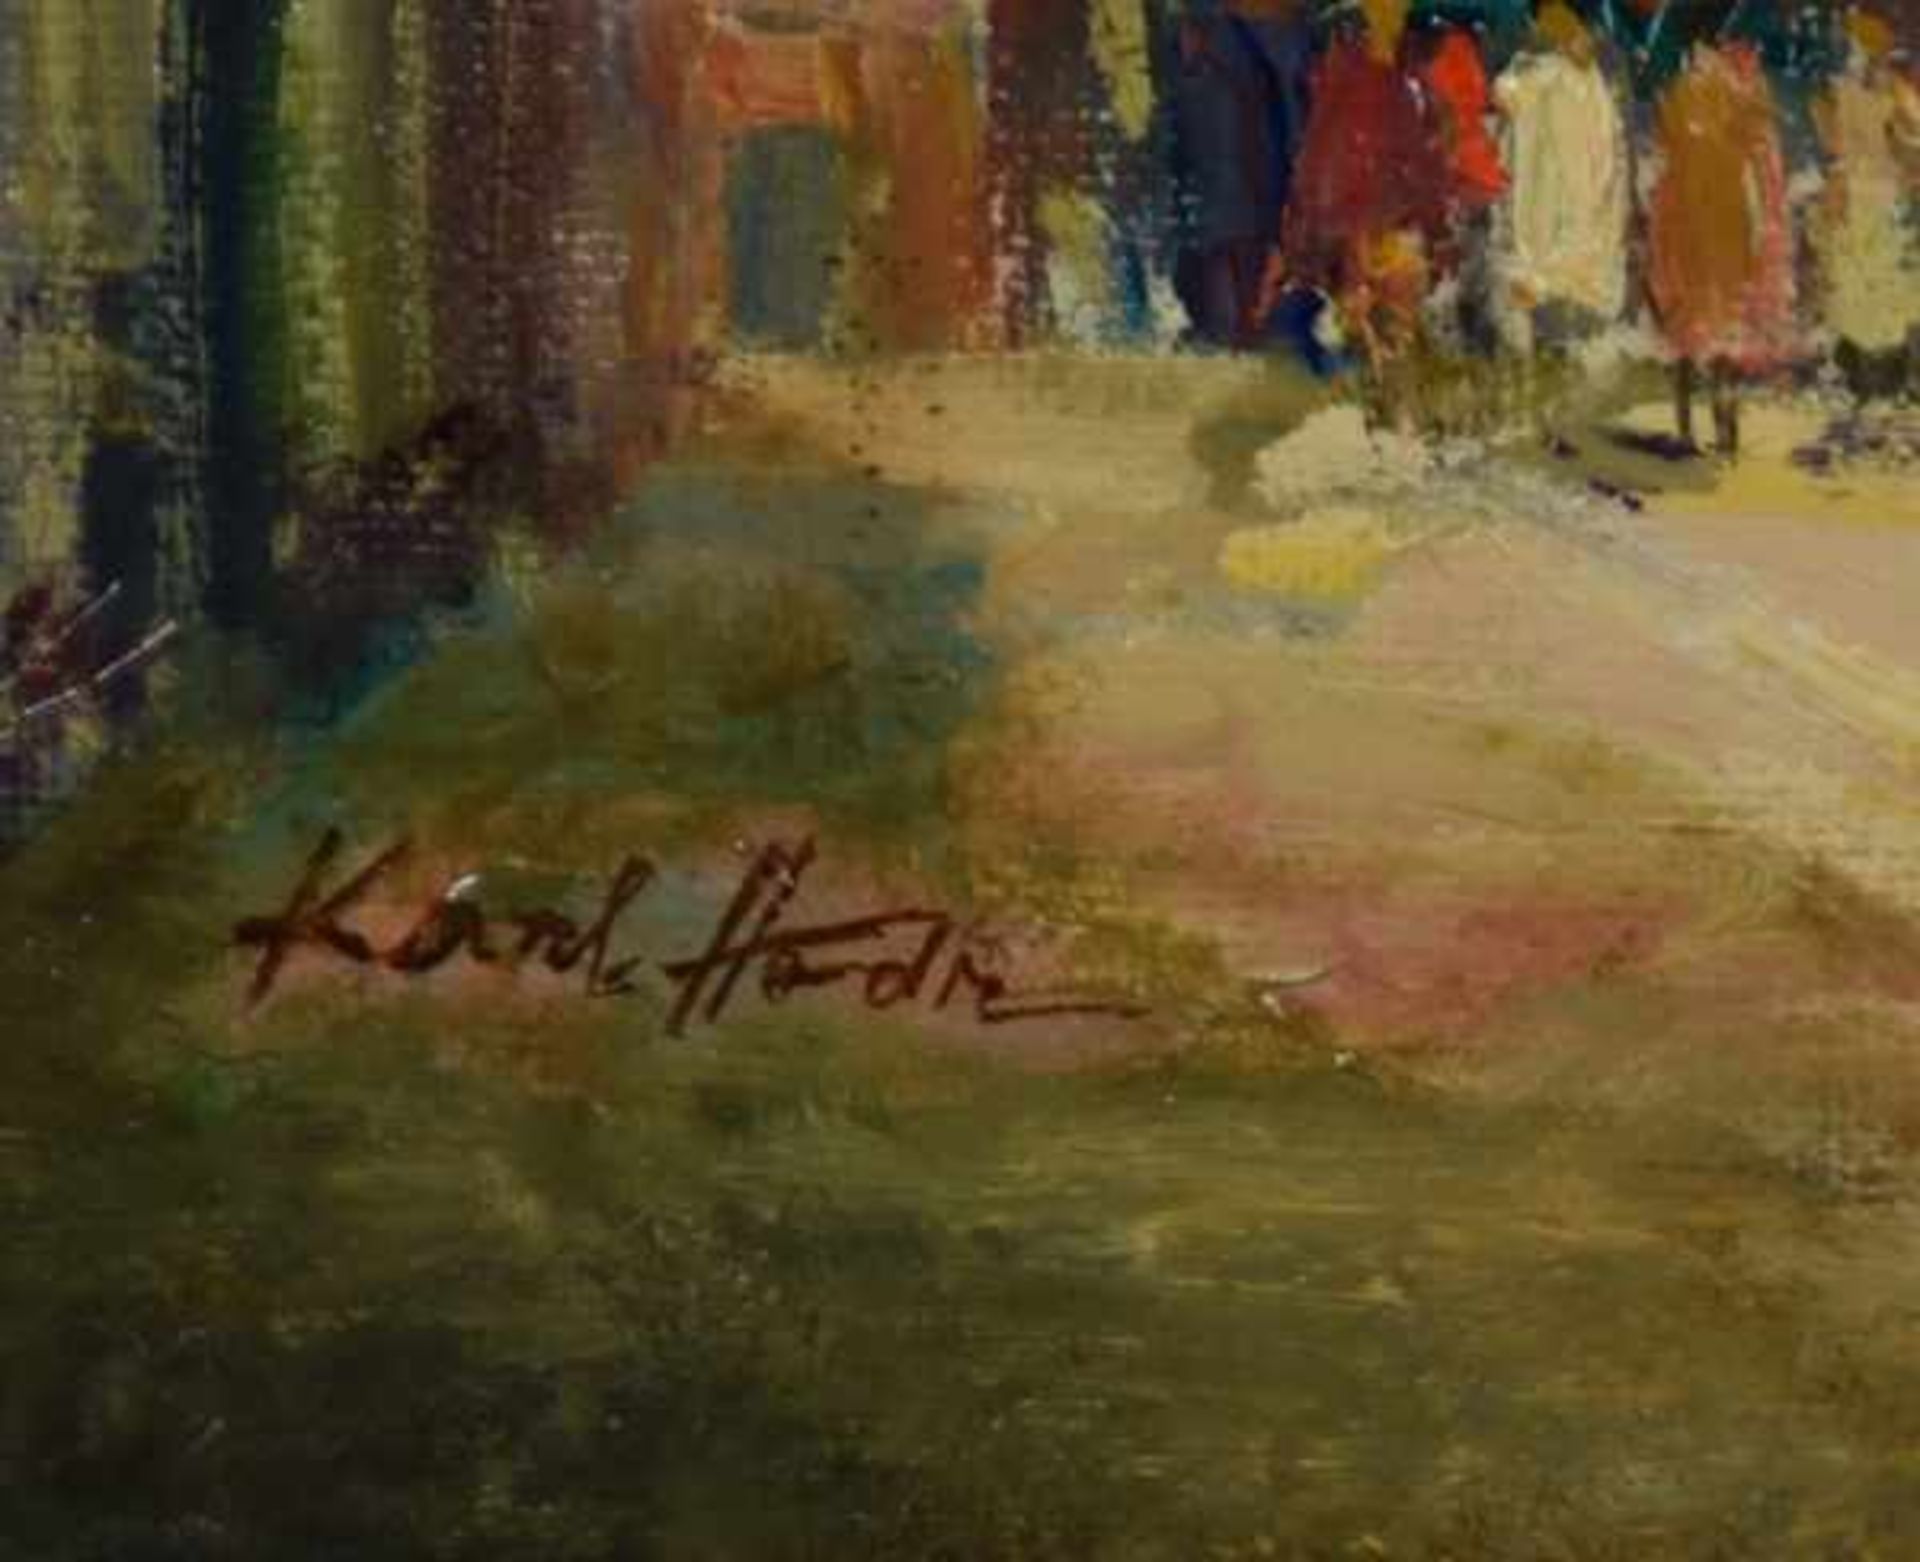 HODR Karel (1910 Prag - 2002 Konstanz) "Évian-les-Bains am Gender See", lebhafte Altstadtszene mit - Image 3 of 4